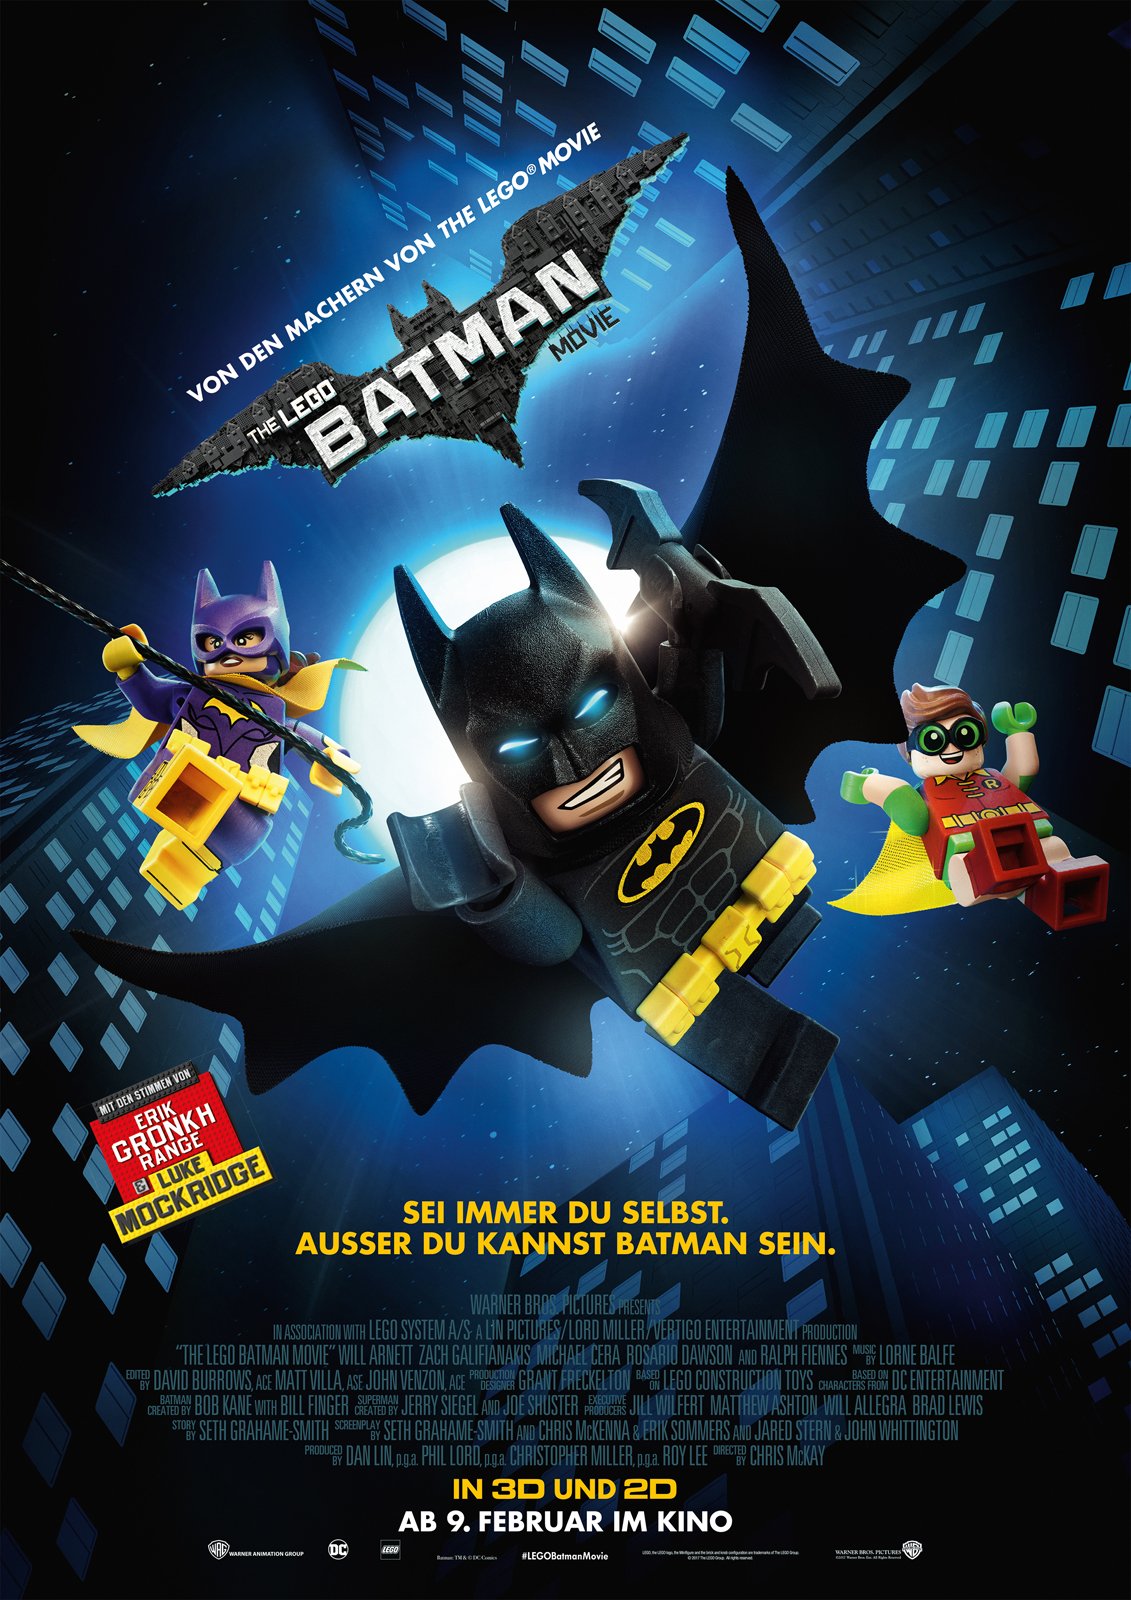 《乐高蝙蝠侠2:DC超级英雄》宣传片及游戏截图首曝_www.3dmgame.com